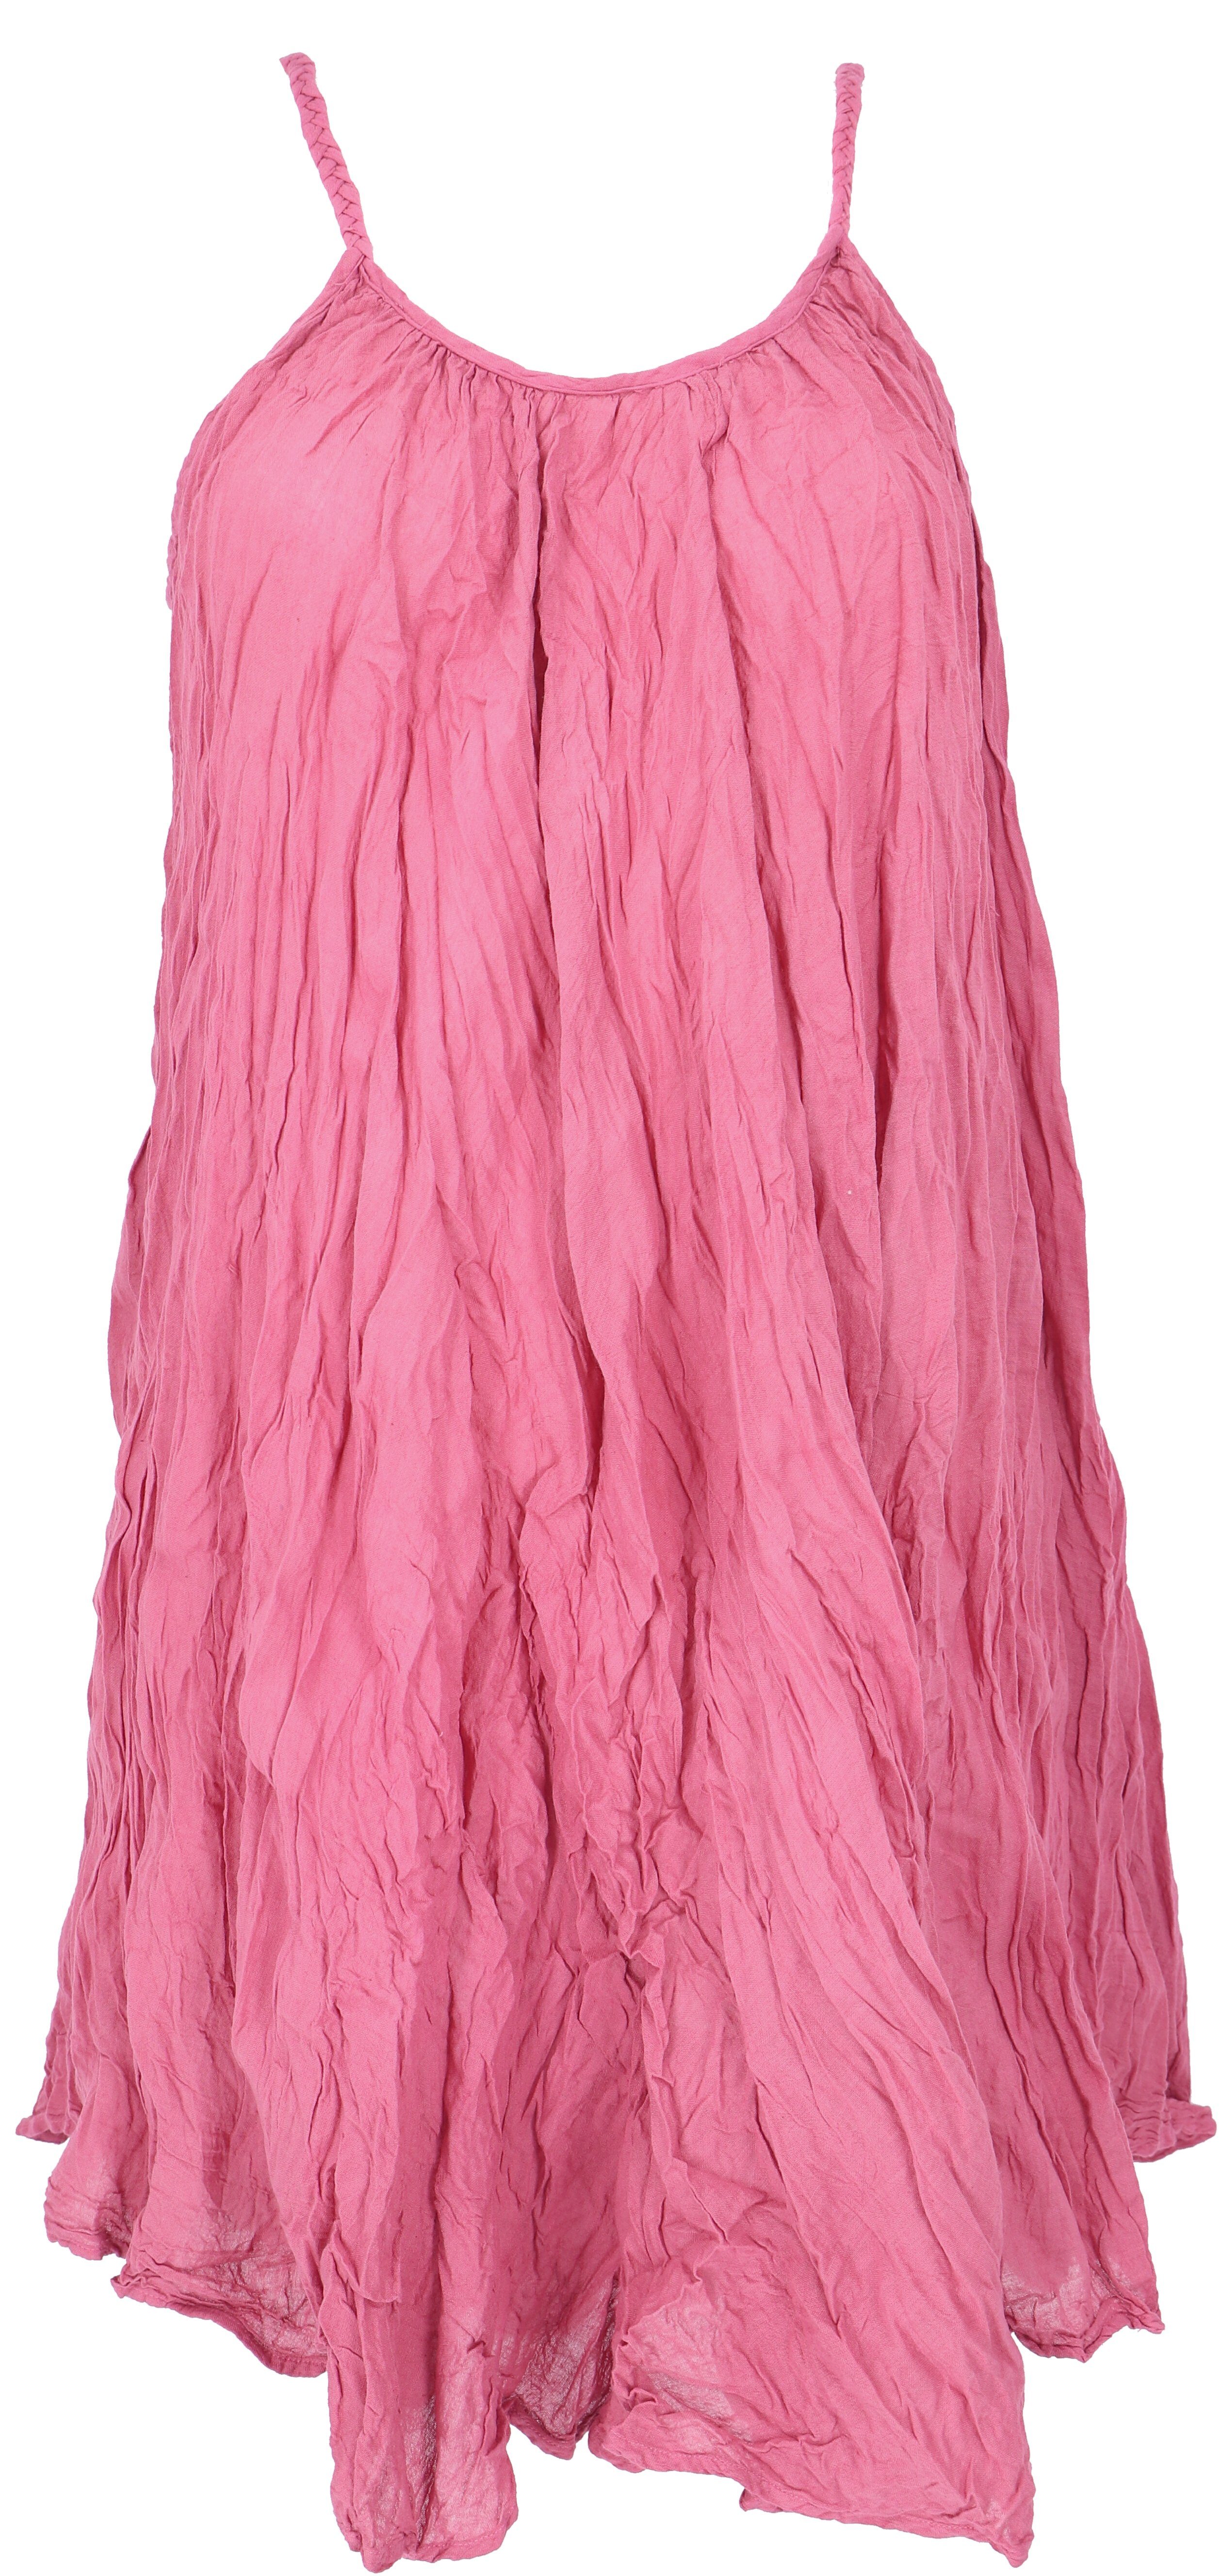 Krinkelkleid, pink alternative Guru-Shop Midikleid Minikleid, Boho Sommerkleid,.. Bekleidung